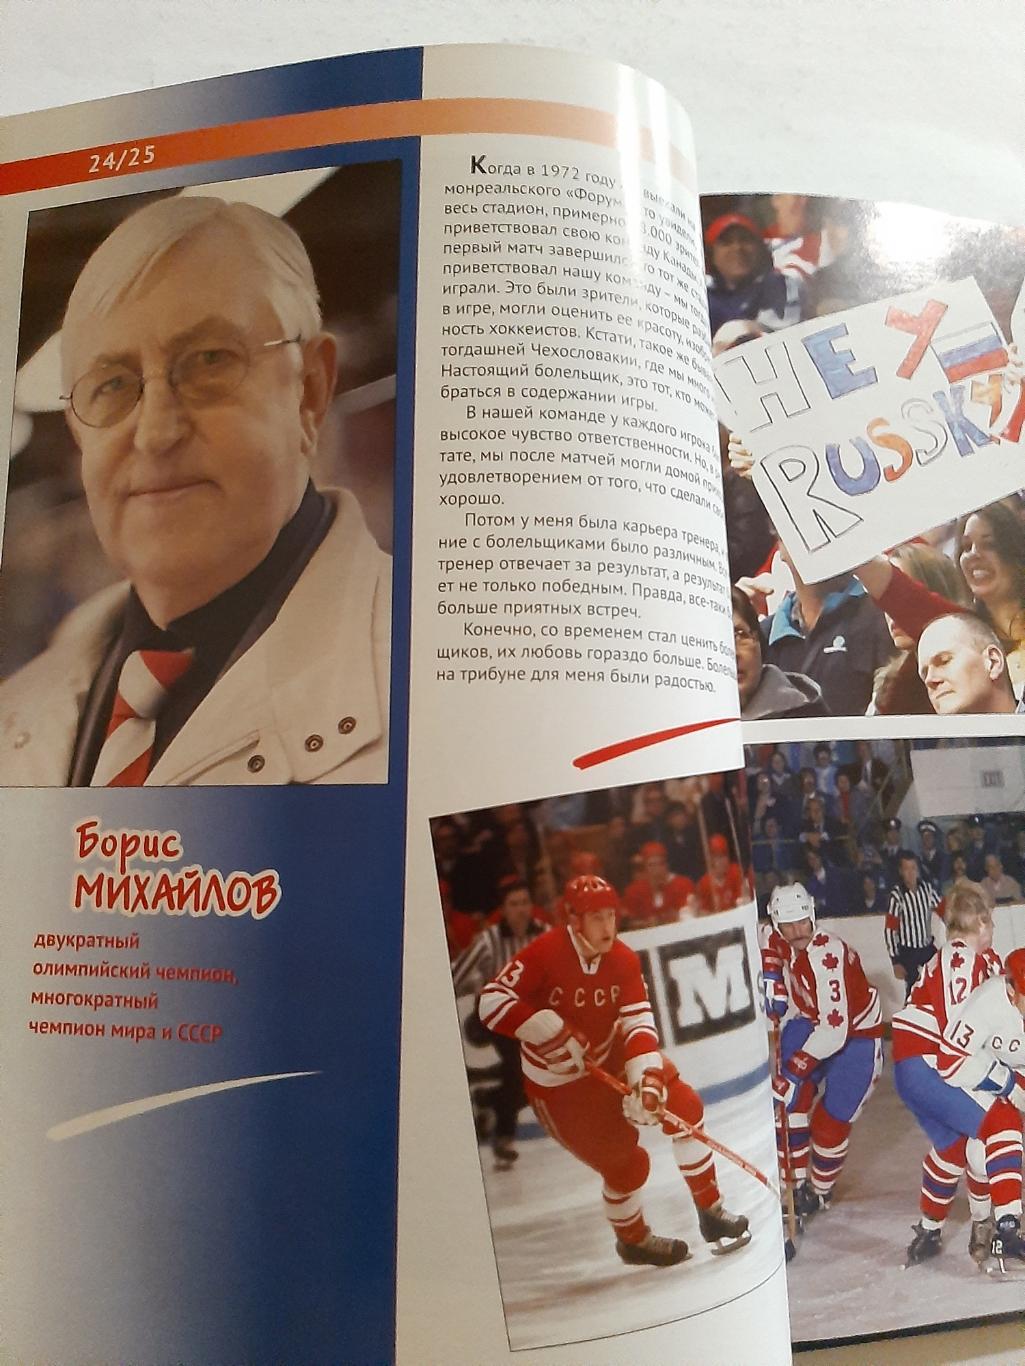 Шестой игрок Книга о хоккейных болельщиков и о хоккейных болельщиках В. Кукушкин 1